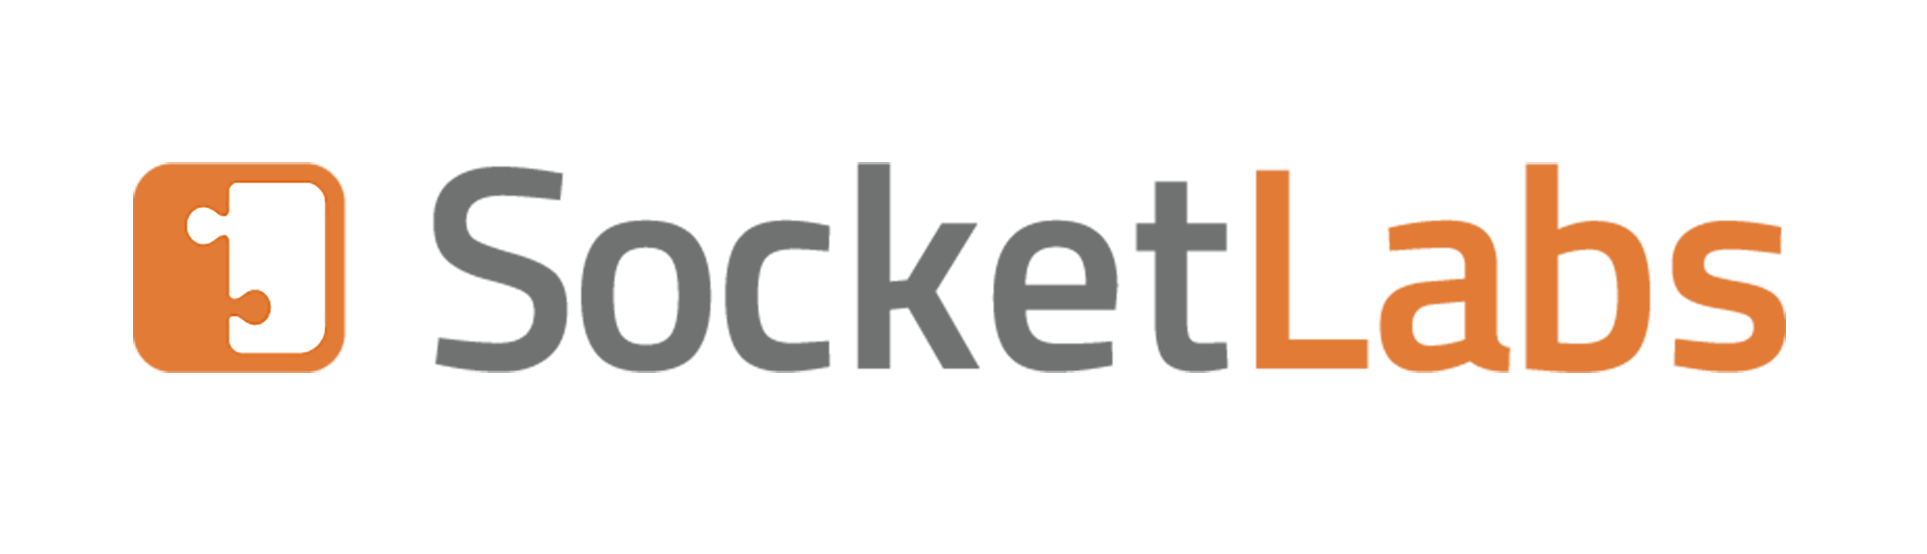 Socket